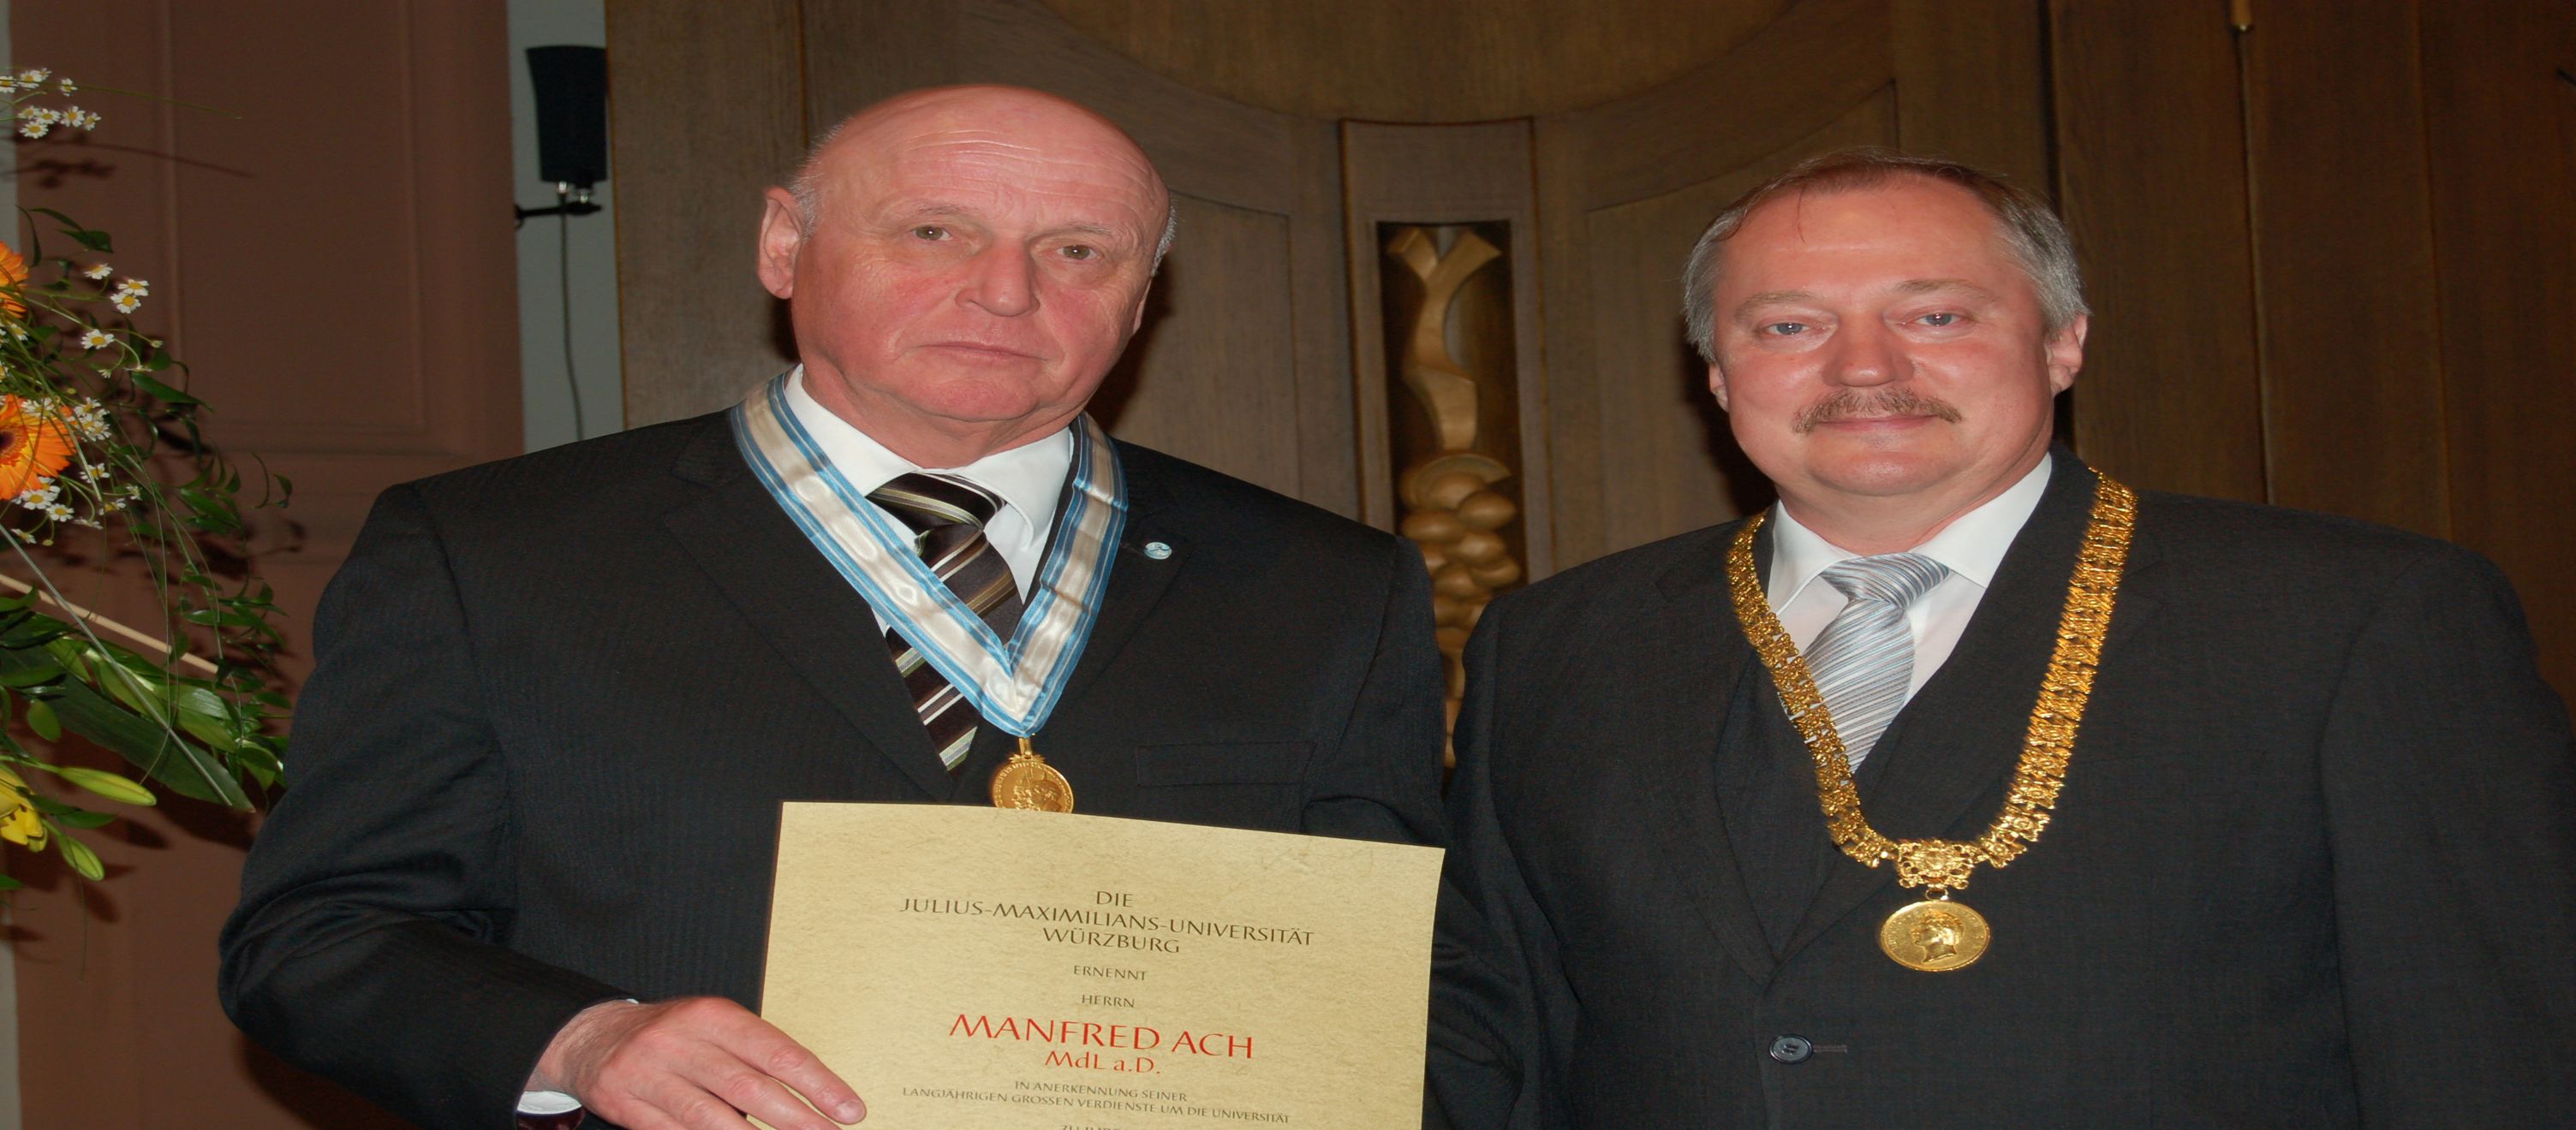 Manfred Ach bei der Verleihung der Ehrensenatorwürde mit dem damaligen Unipräsidenten.